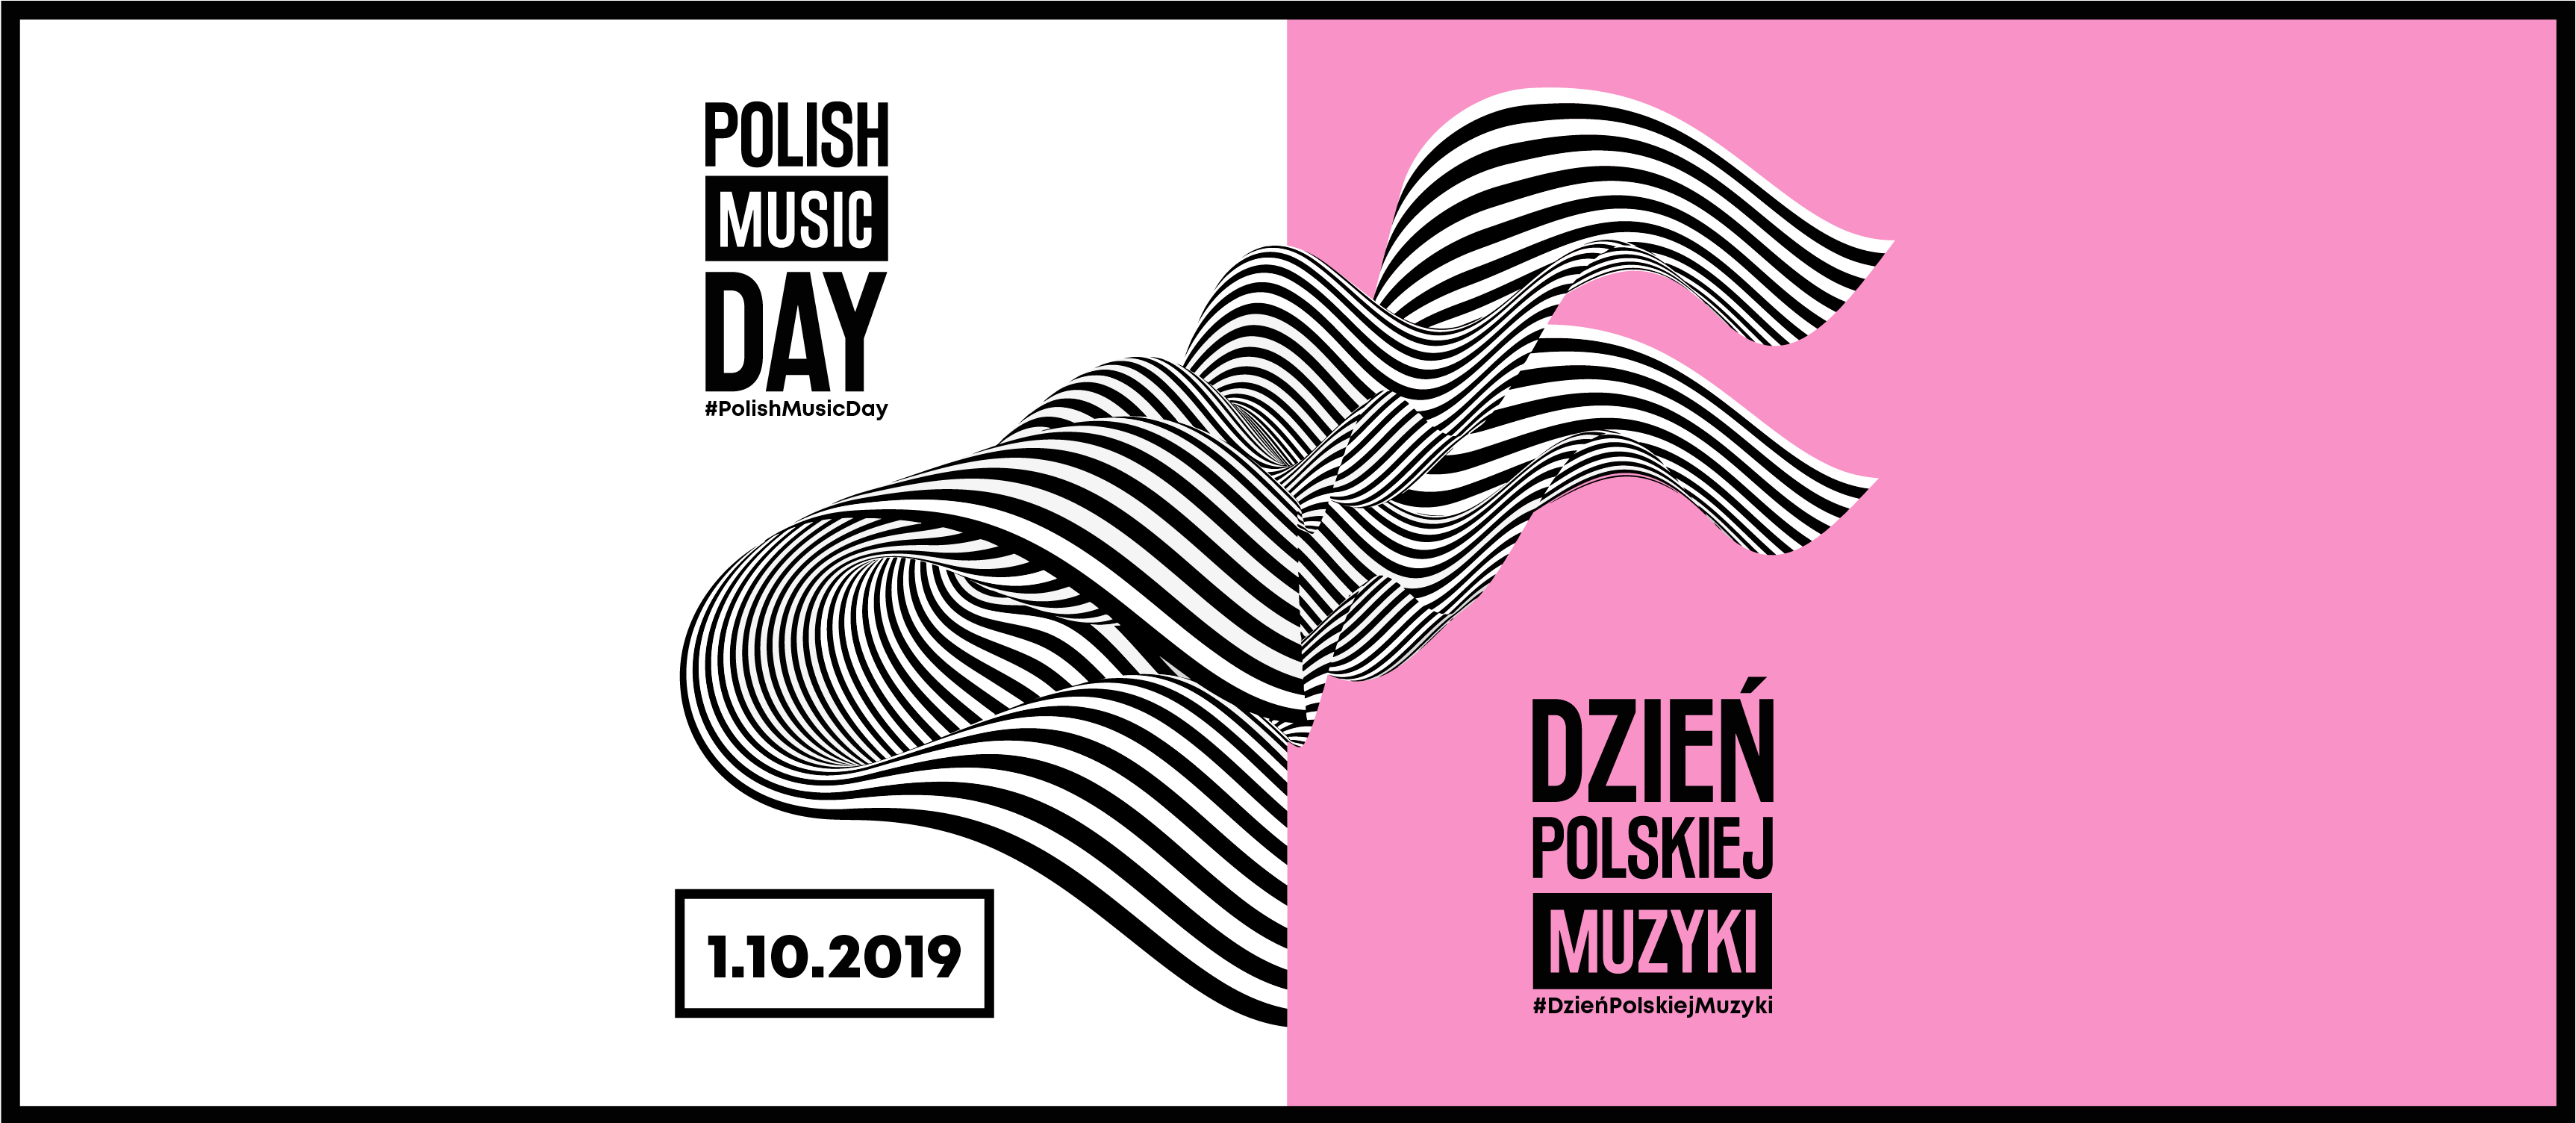 Polacy kochają radio, ale czy radio kocha Polaków?